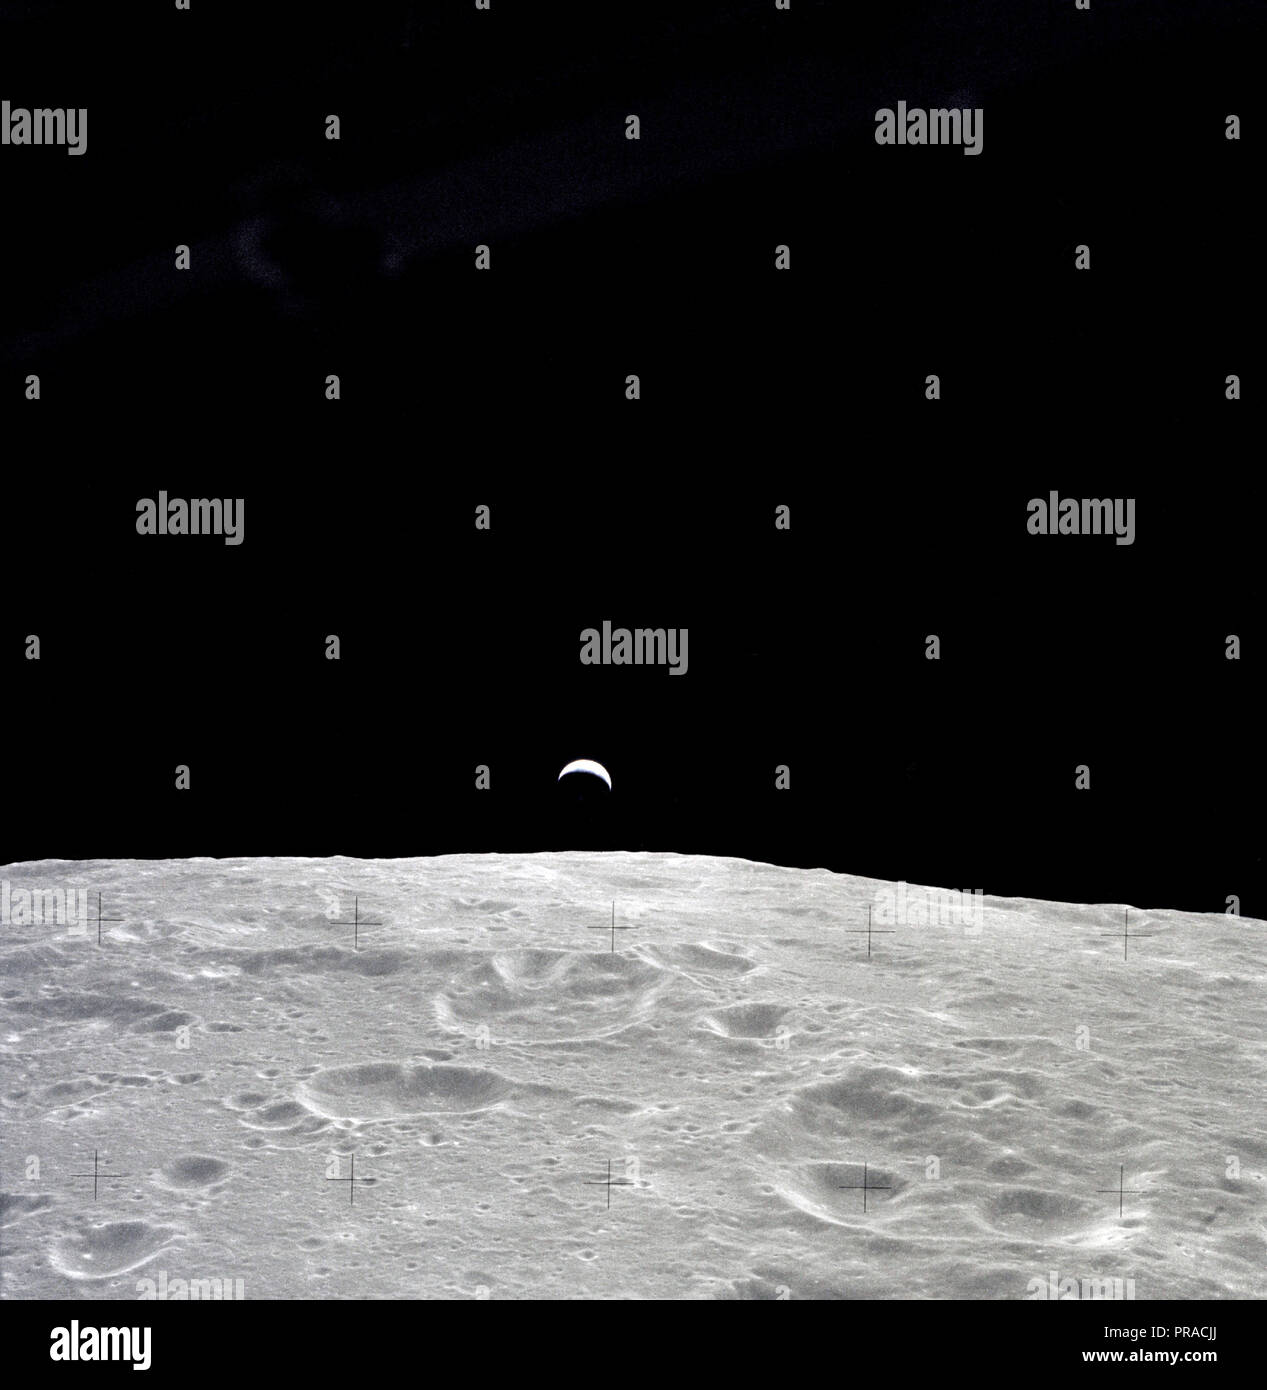 Une terre illuminée partiellement s'élève au-dessus de l'horizon lunaire dans cette photographie prise du vaisseau Apollo 12 en orbite lunaire. Banque D'Images